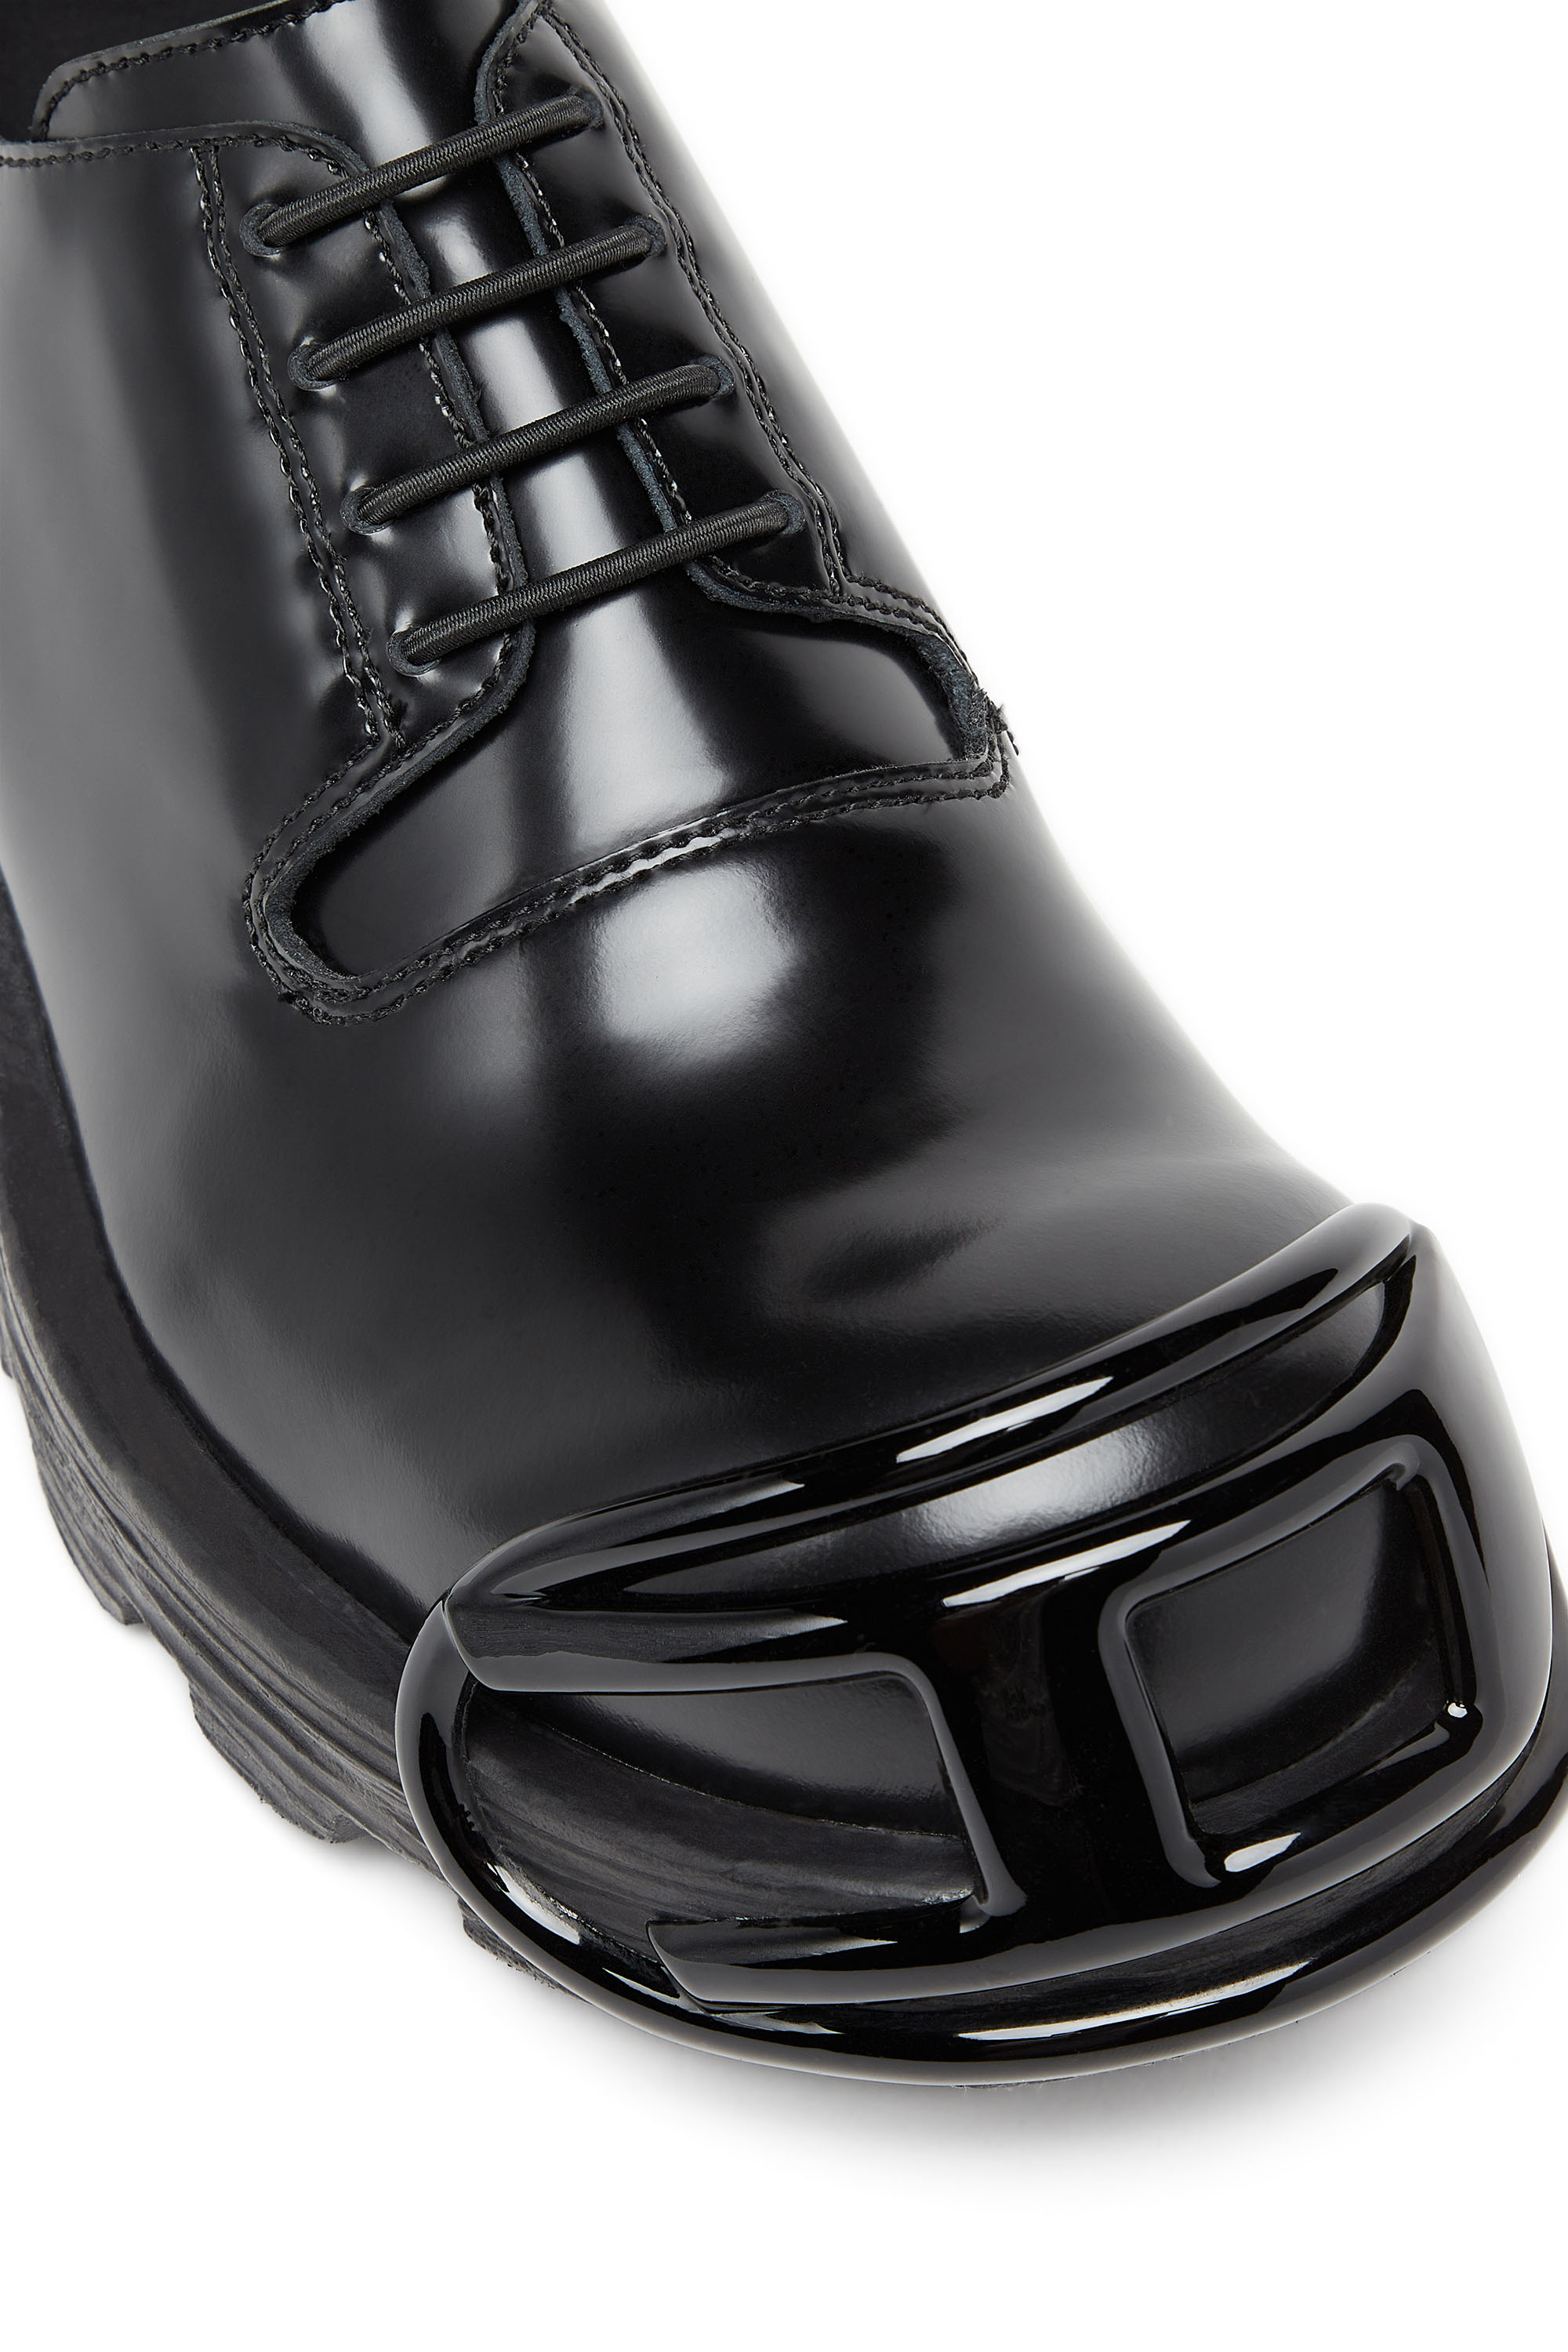 ディーゼル／DIESEL レースアップブーツ シューズ 靴 メンズ 男性 男性用レザー 革 本革 ブラック 黒  COLONEL-LA ストレートチップ サイドジップ靴/シューズ